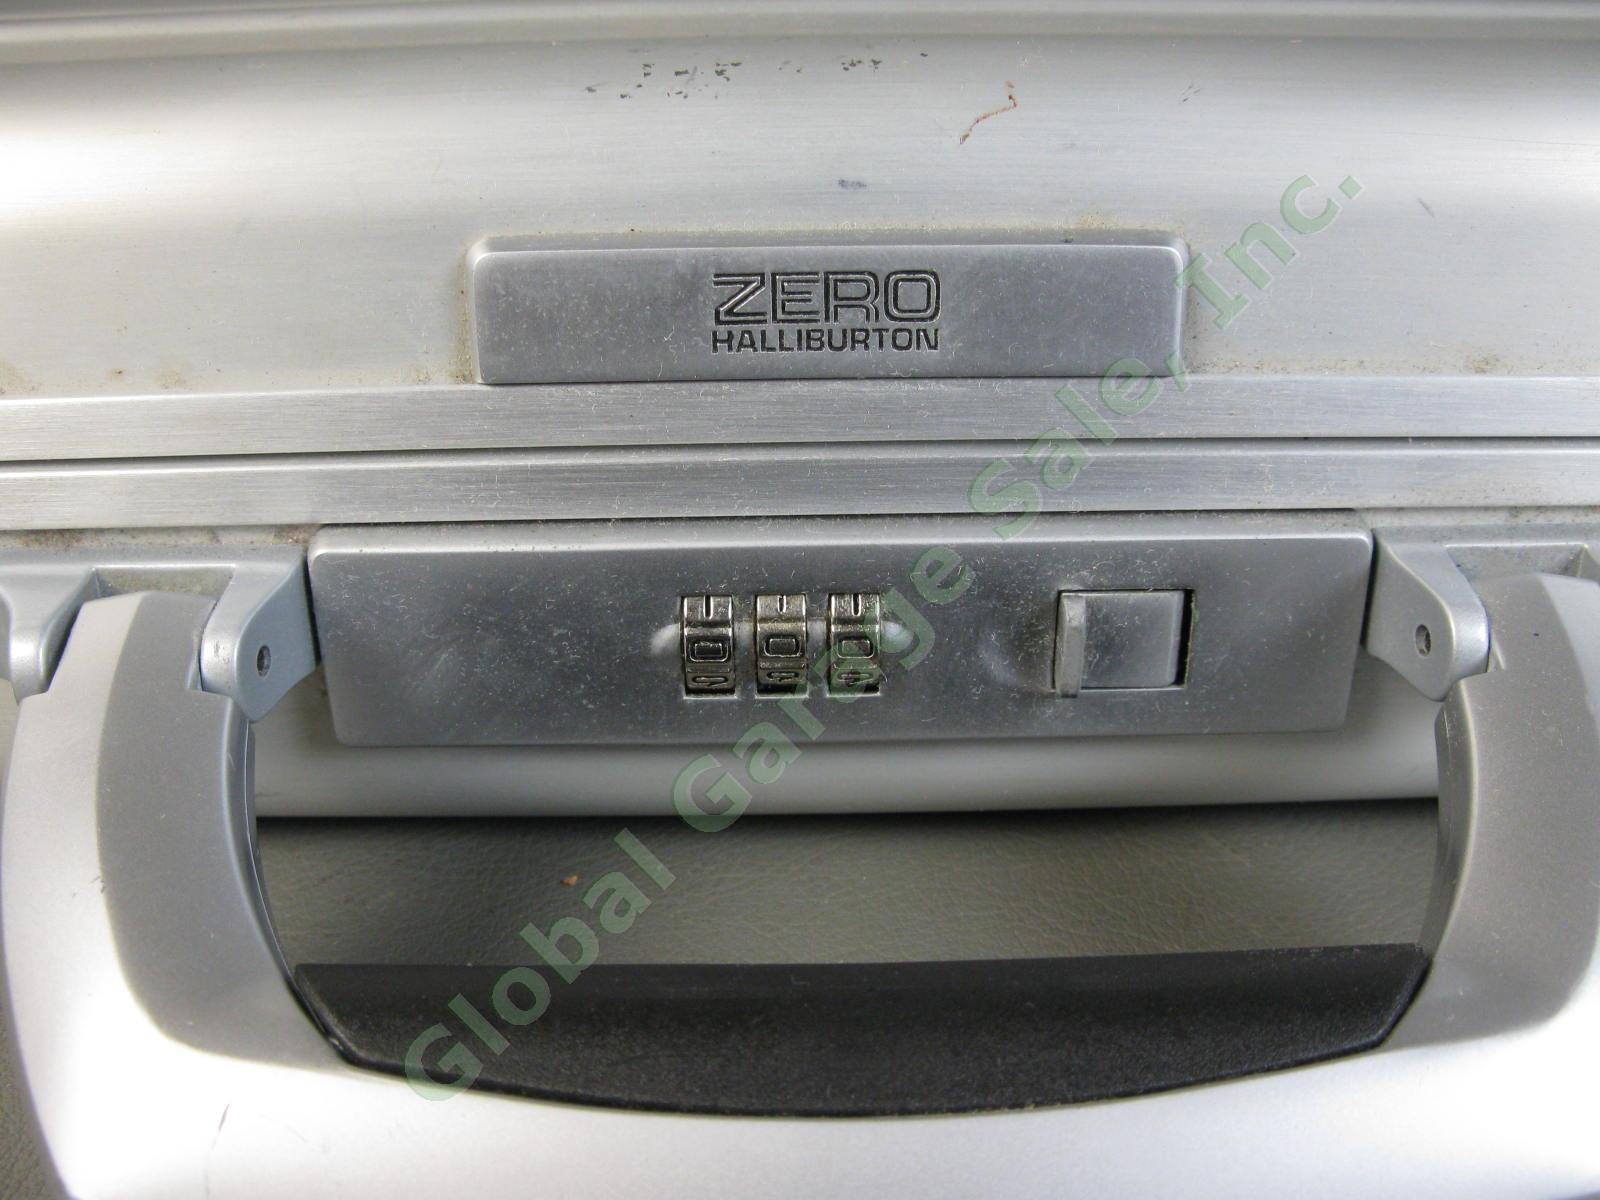 Halliburton ZERO Aluminum Briefcase 18"x13"x3" Combo Lock Excellent Condition NR 1